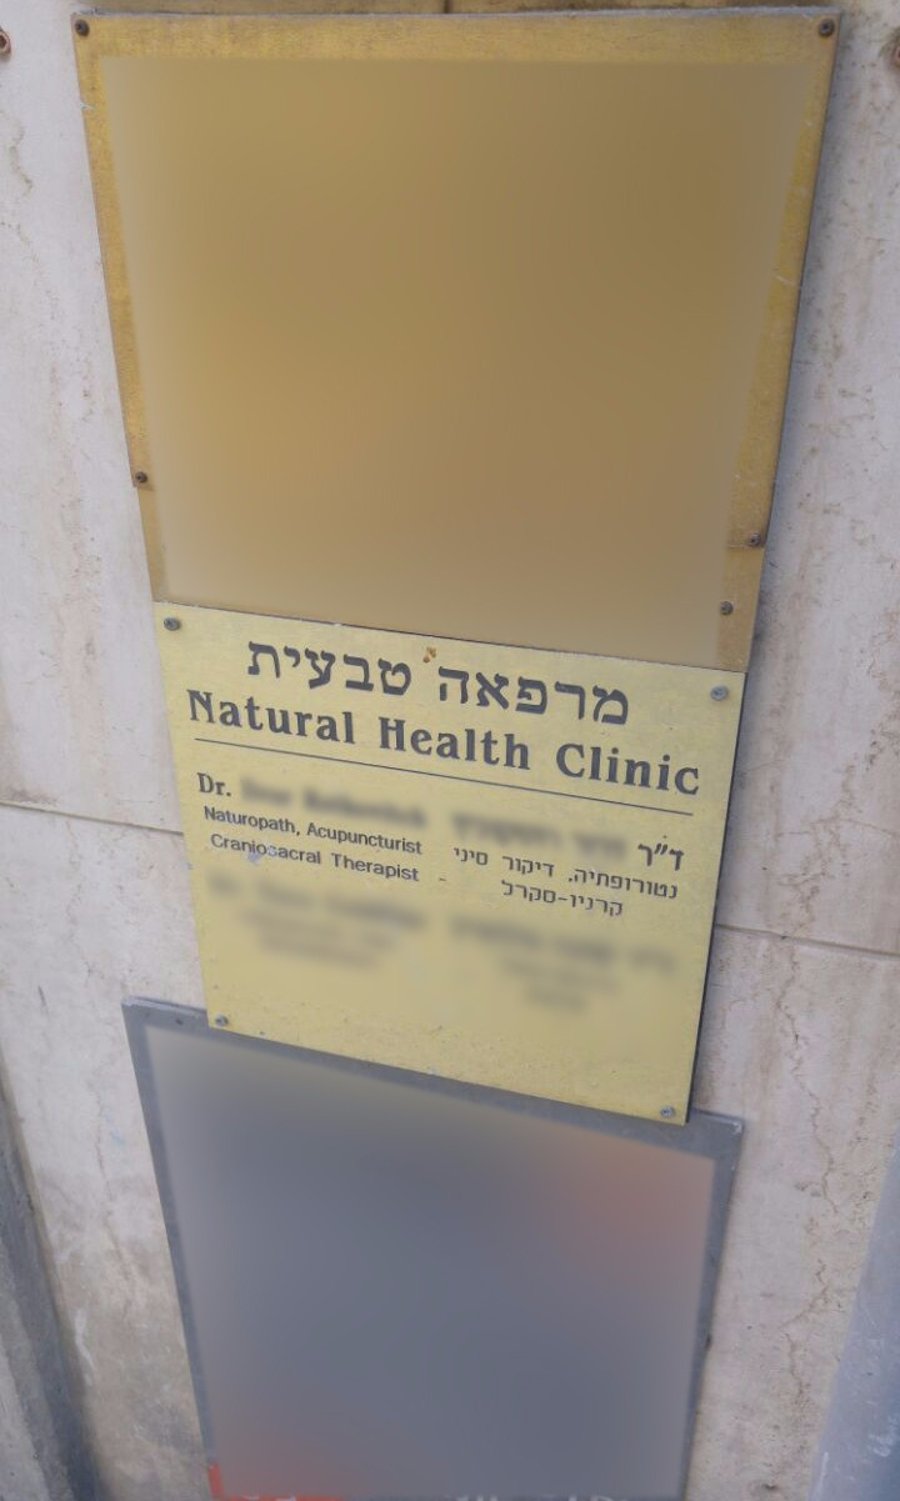 פתח ה"מרפאה" של רוטקוביץ' ברח' הלל בירושלים